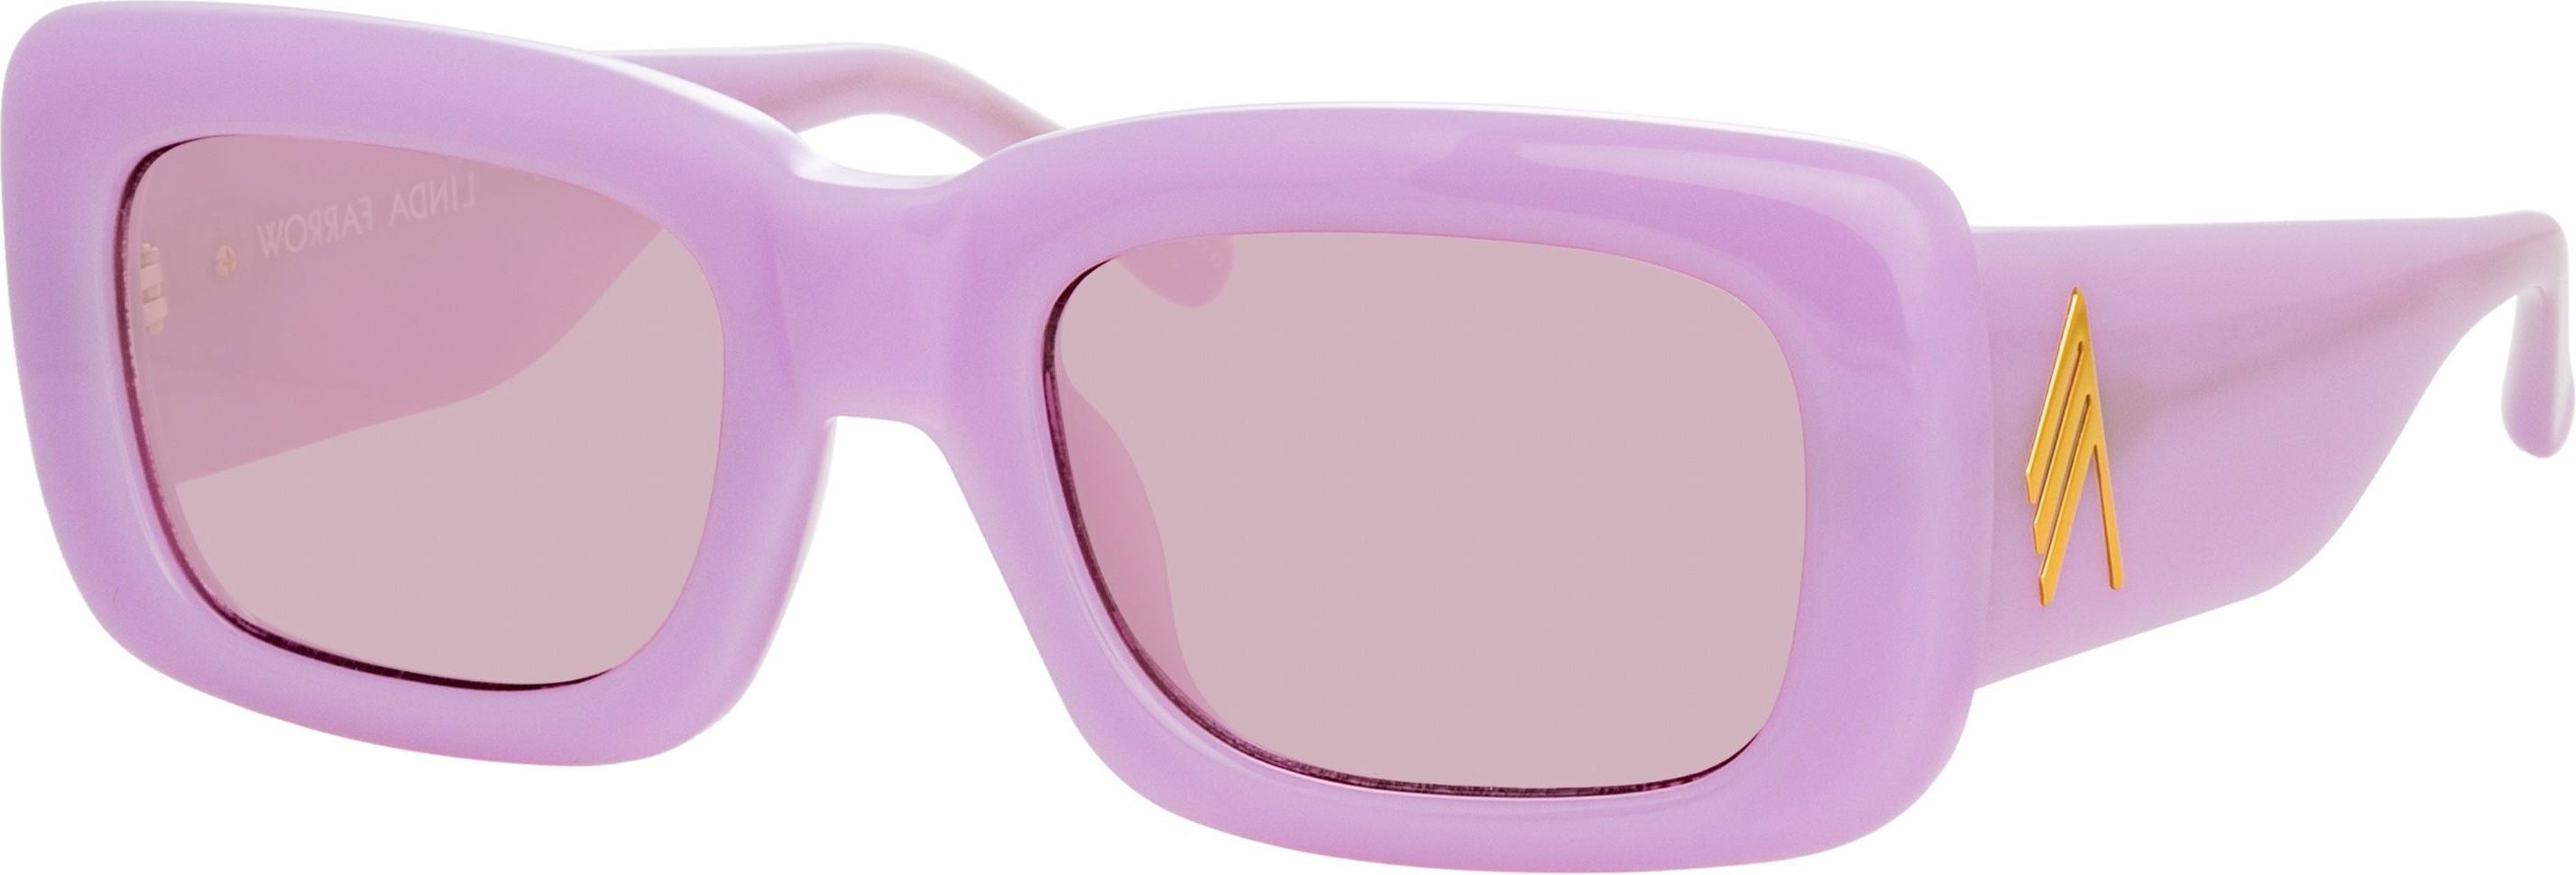 Color_ATTICO3C18SUN - The Attico Marfa Rectangular Sunglasses in Pink